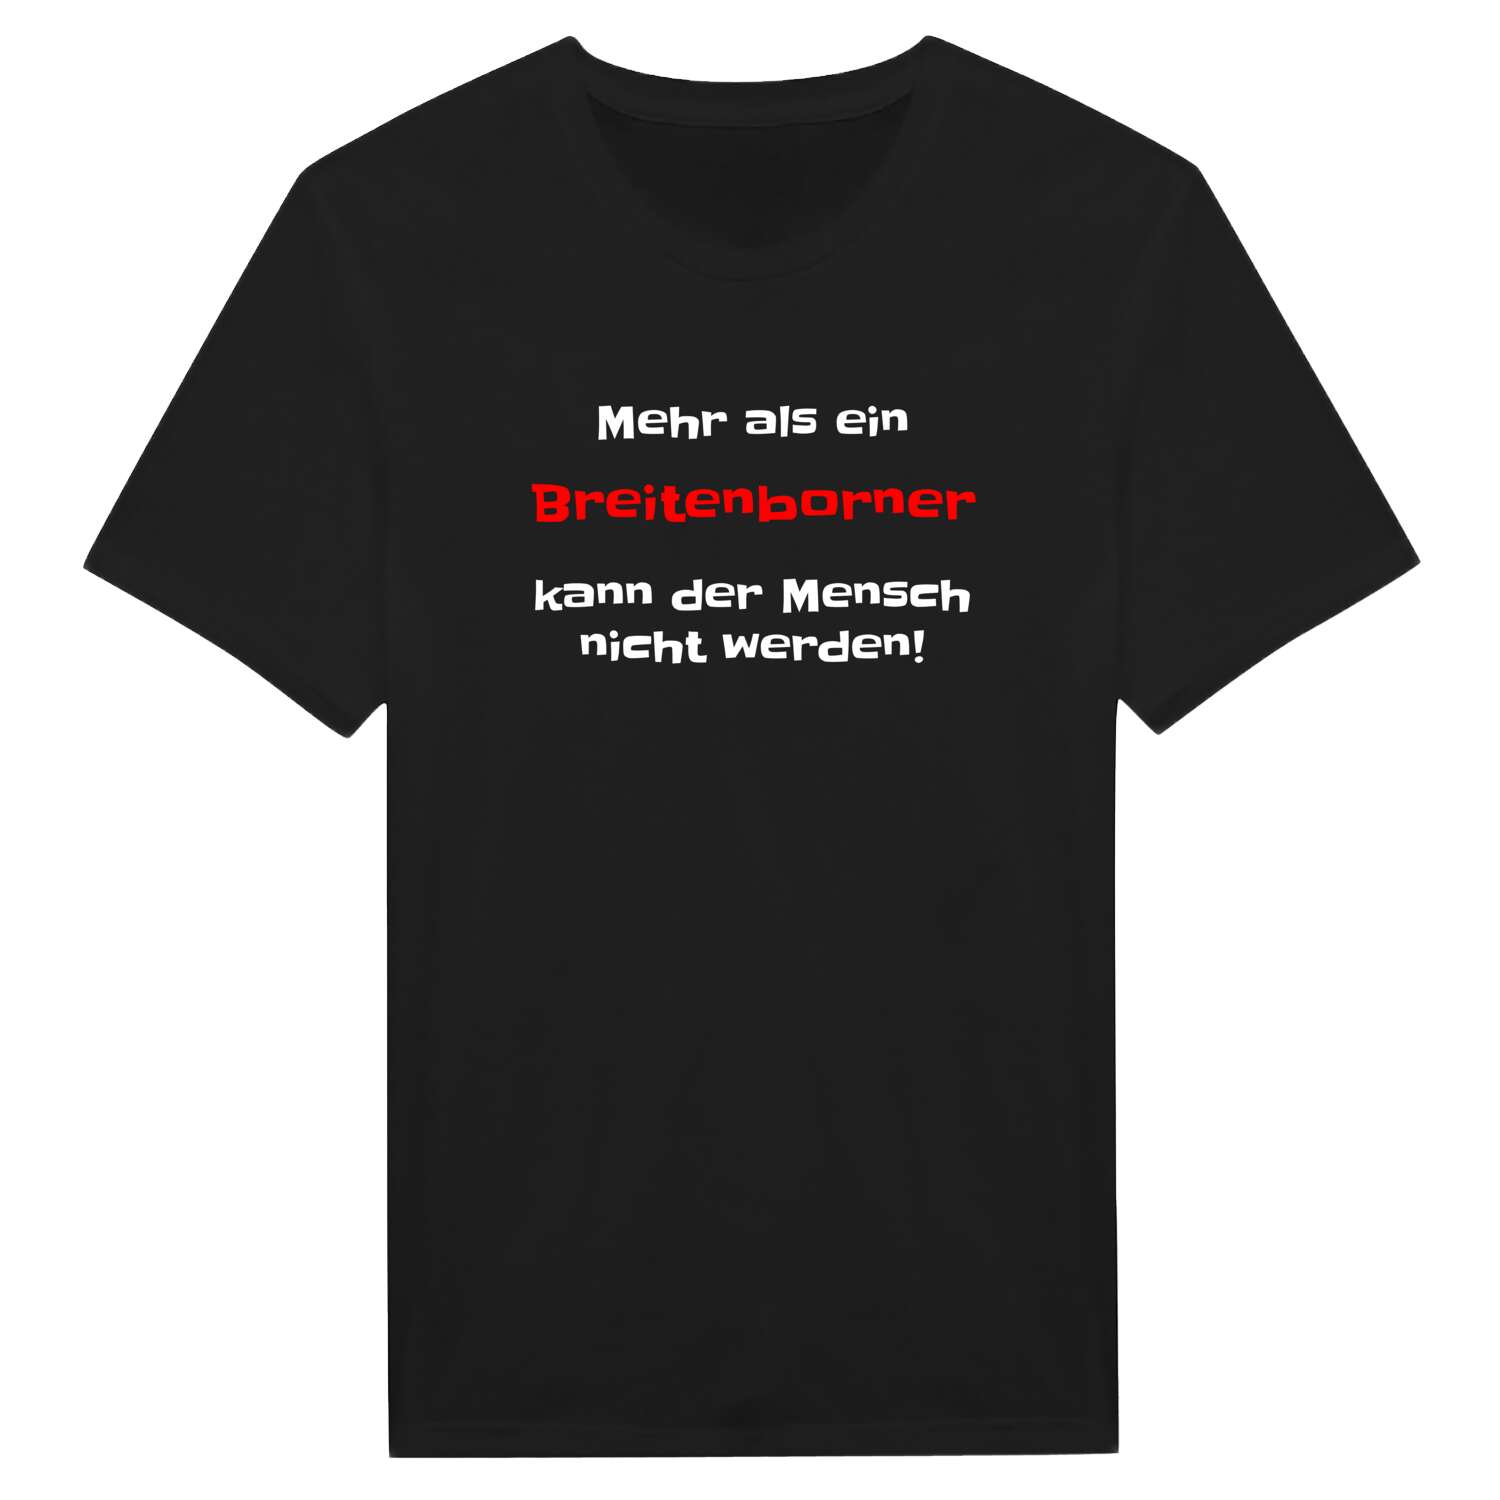 Breitenborn T-Shirt »Mehr als ein«